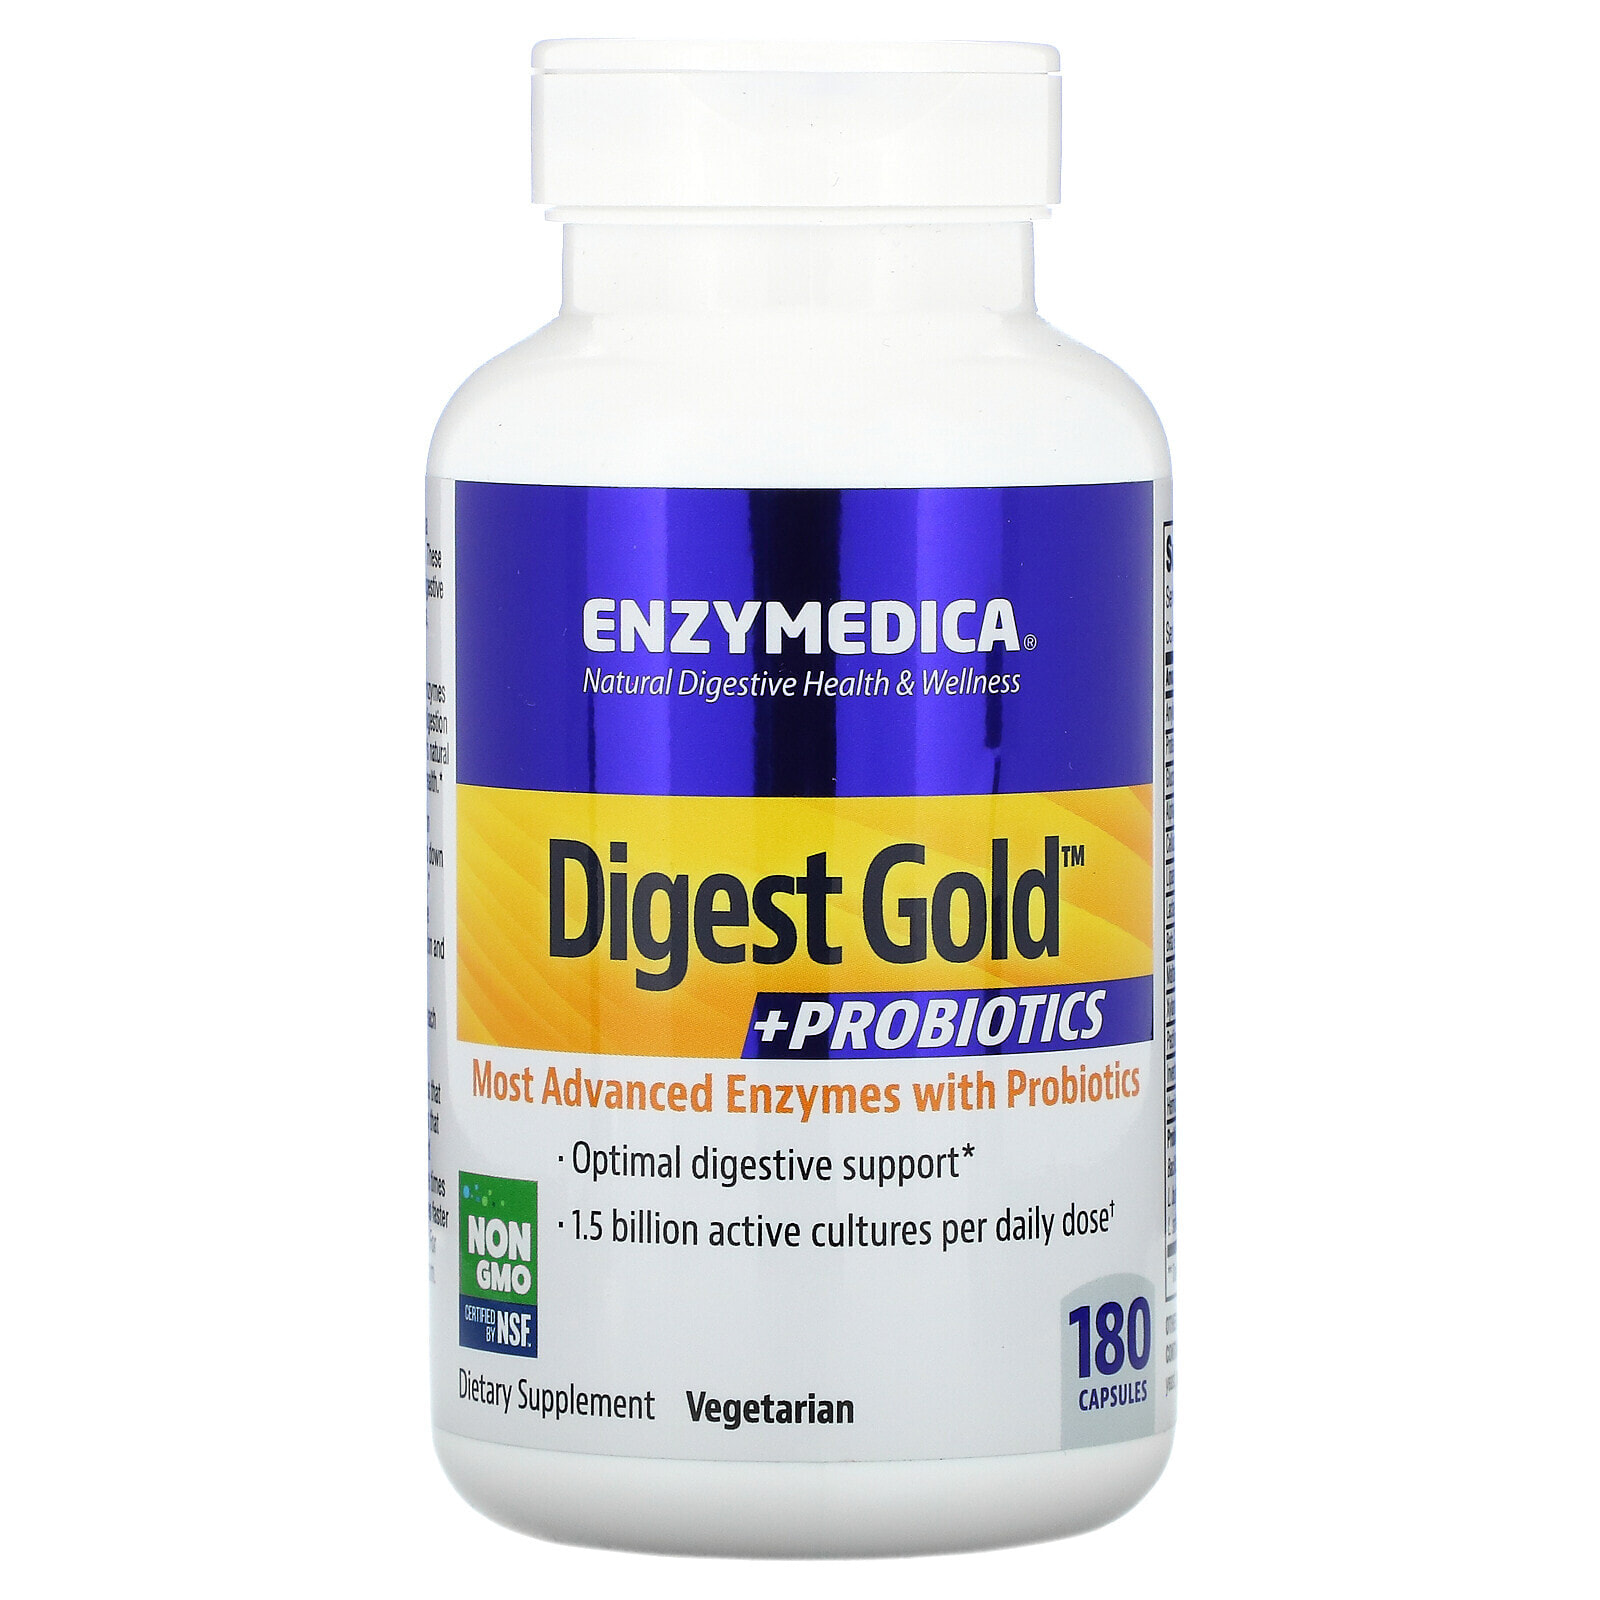 Enzymedica Digest 90 капсул. Enzymedica Digest 180 капсул. Enzymedica-Digest-probiotics-90-Capsules. Enzymedica Digest Gold.